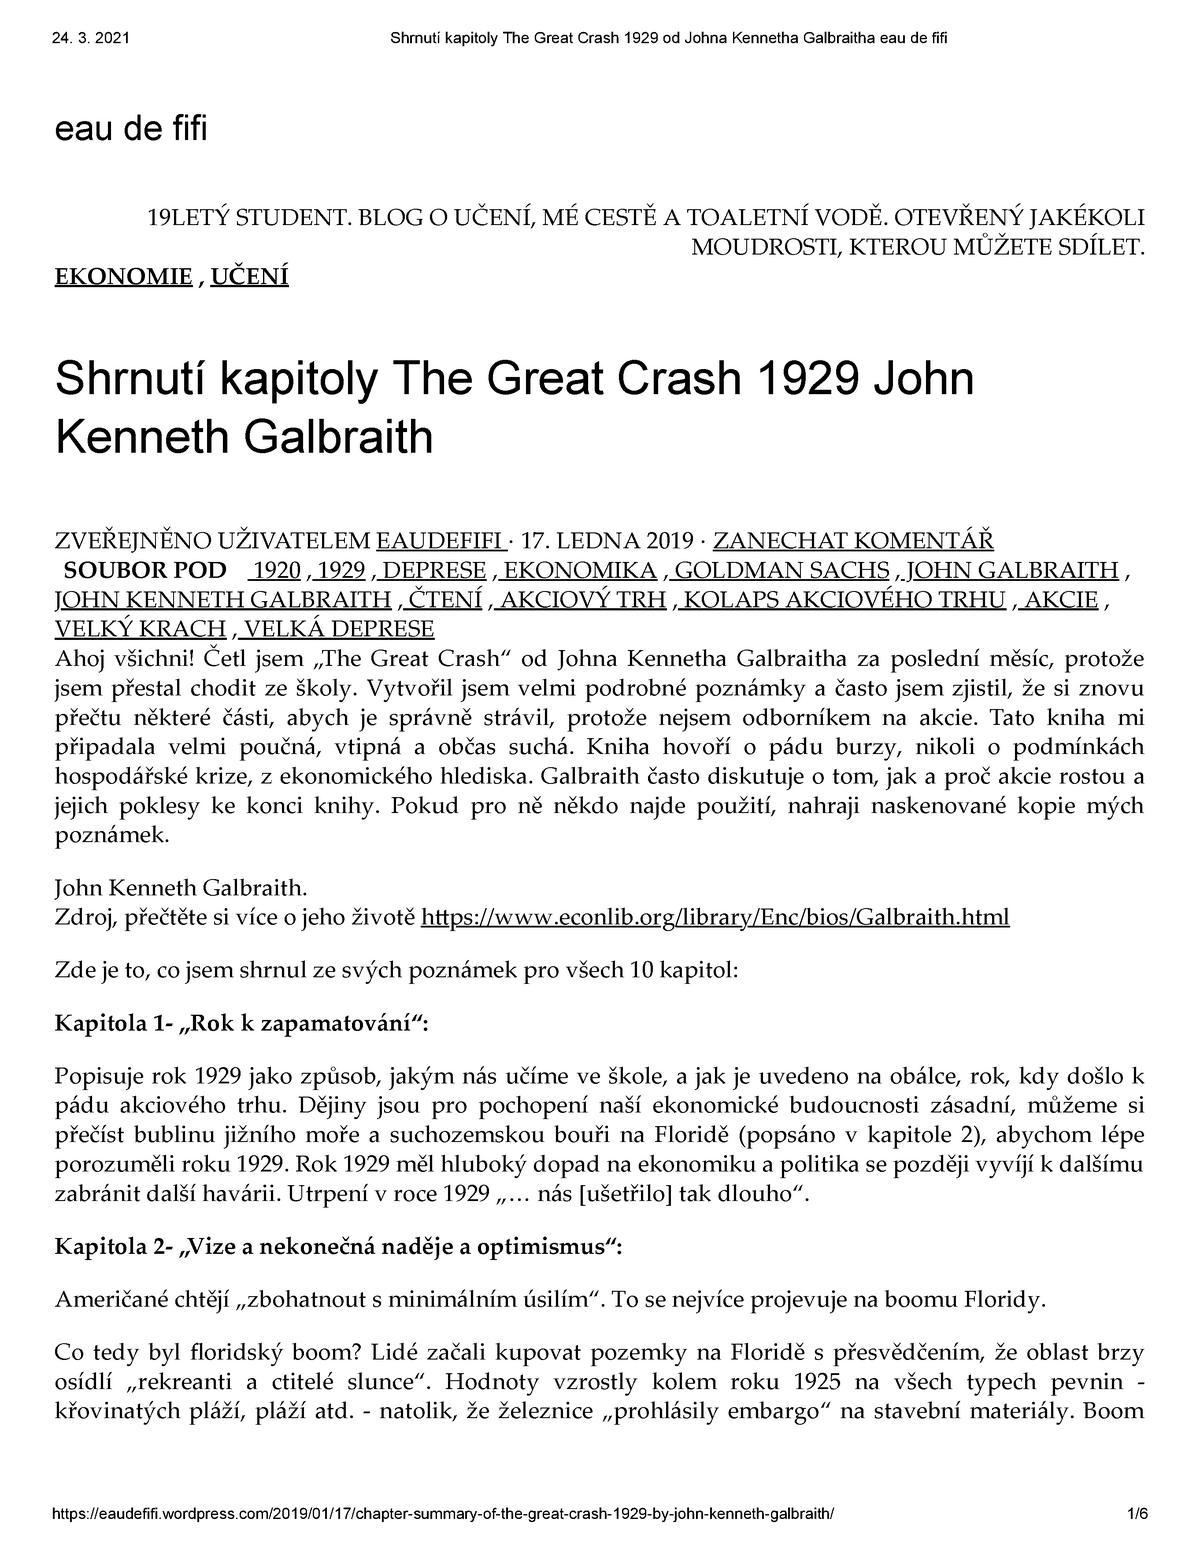 john kenneth galbraith the great crash 1929 sparknotes